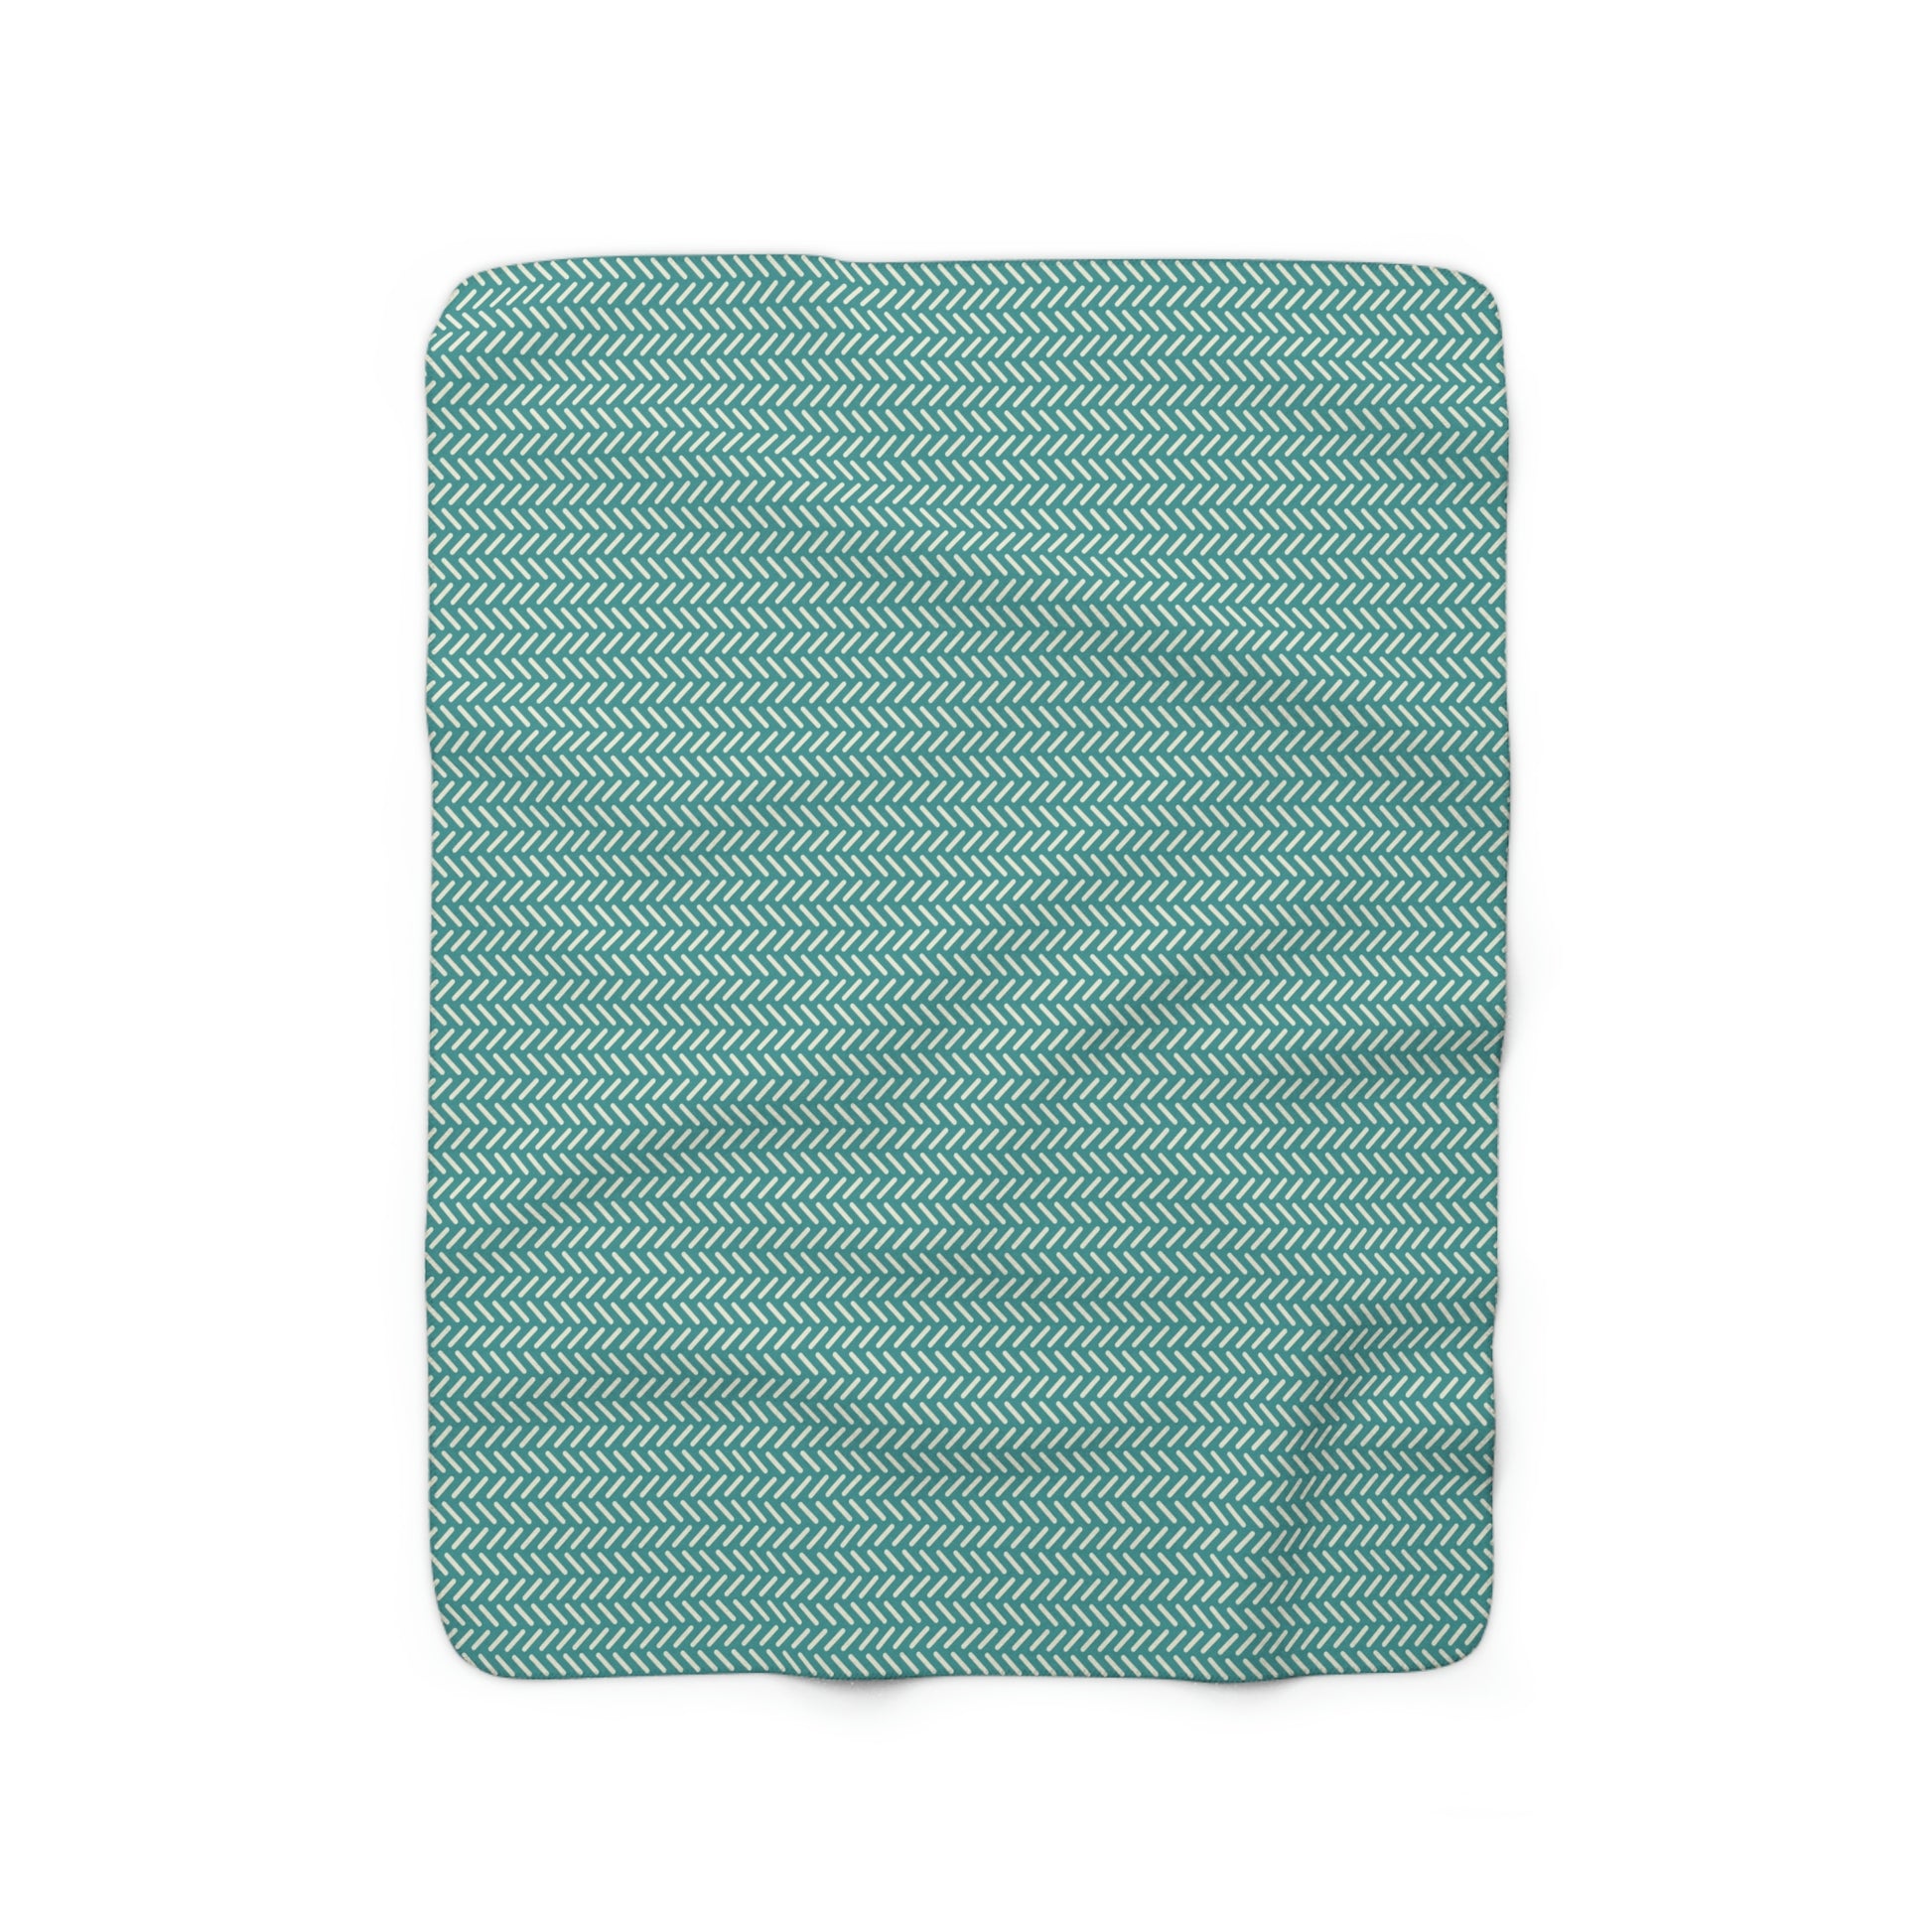 green retro pattern sherpa blanket, green sherpa blanket with retro pattern